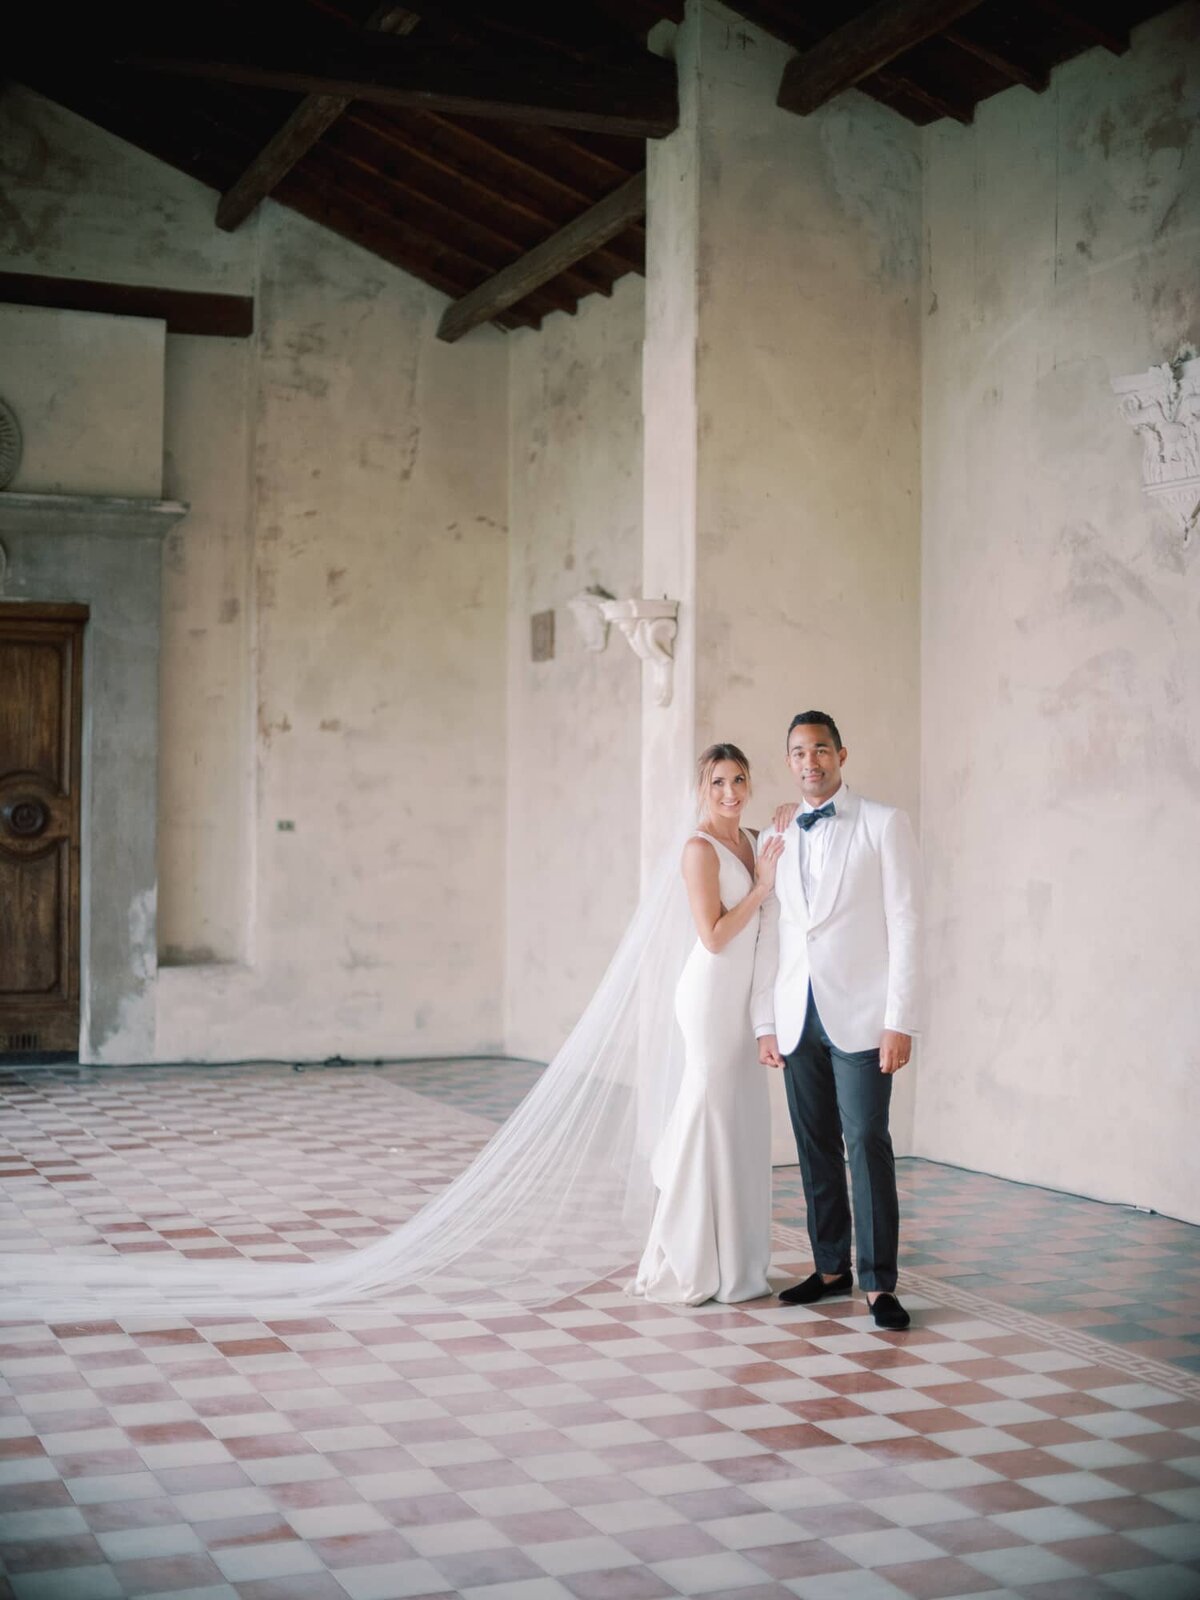 AndreasKGeorgiou-Tuscany-wedding-Italy-57